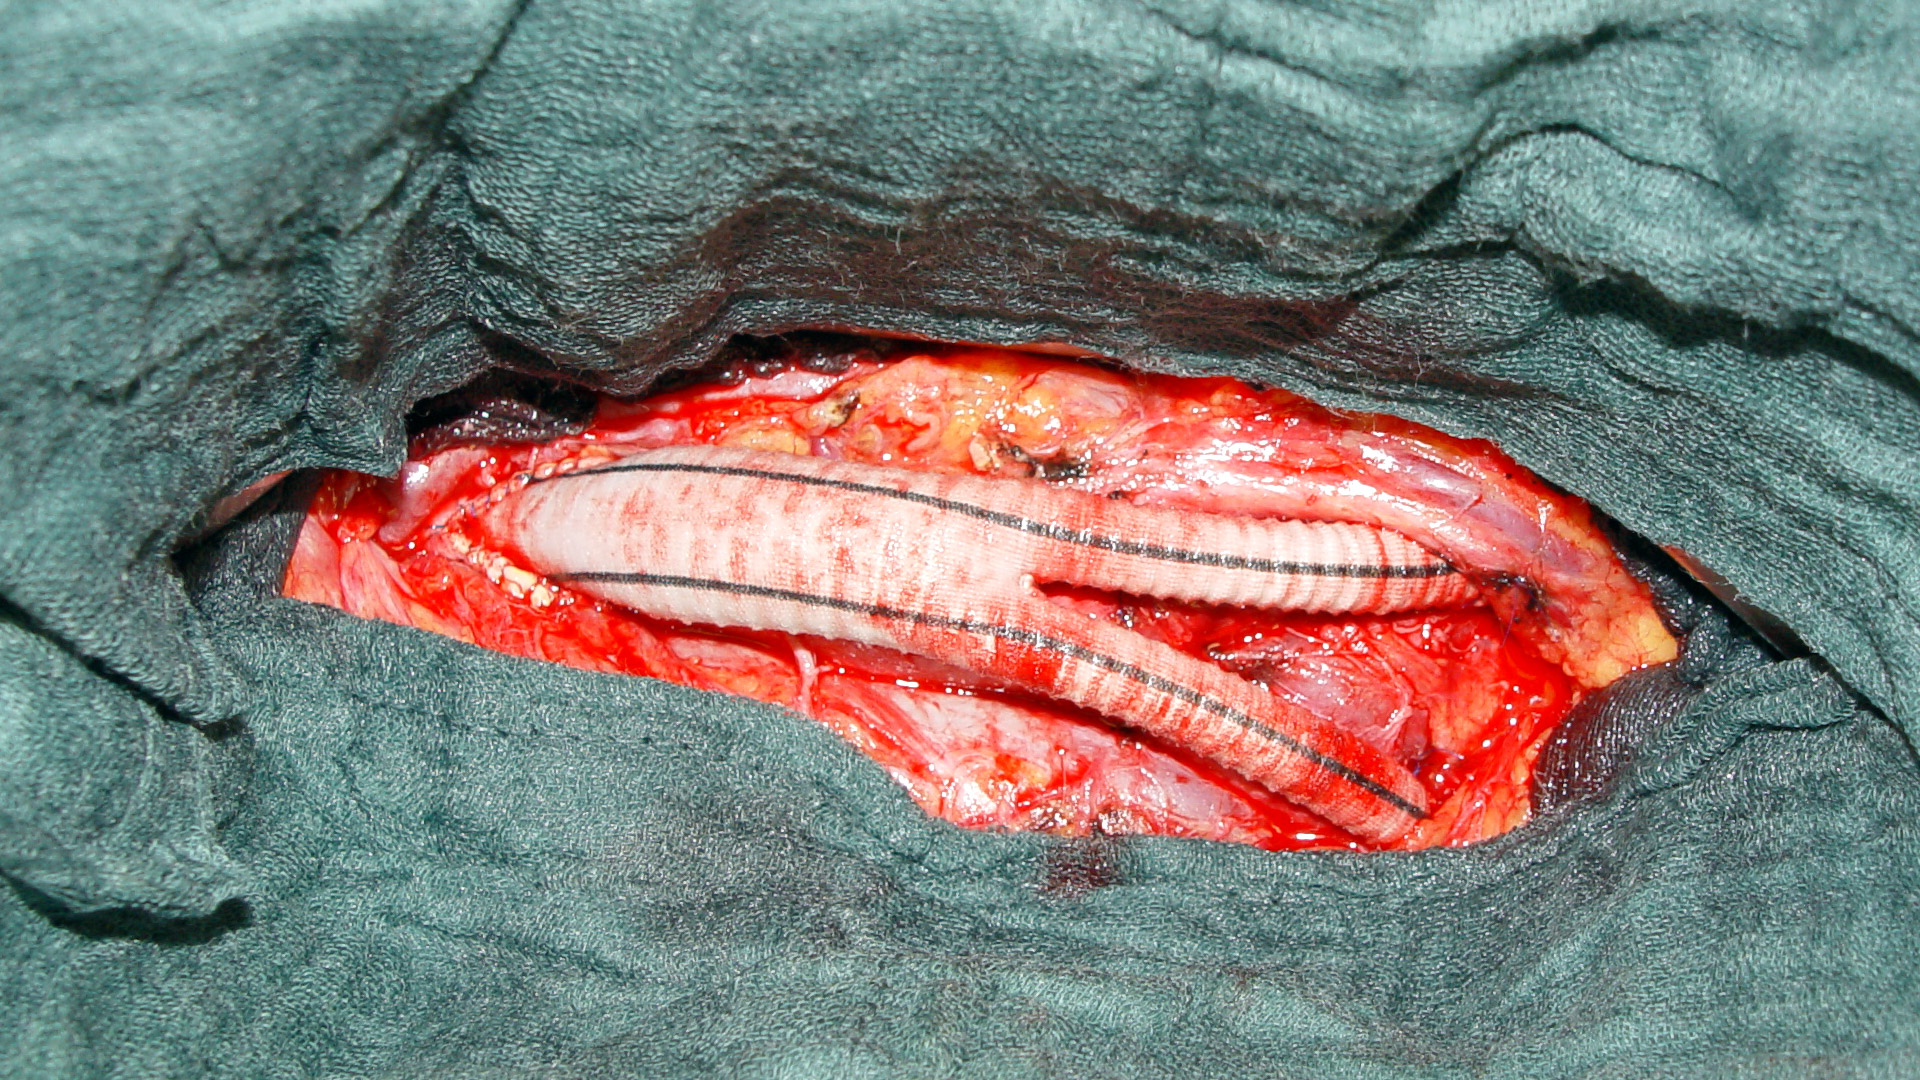 Abschluss einer offenen Aortenaneurysma Operation nach Einnähen einer Aortenersatzprothese